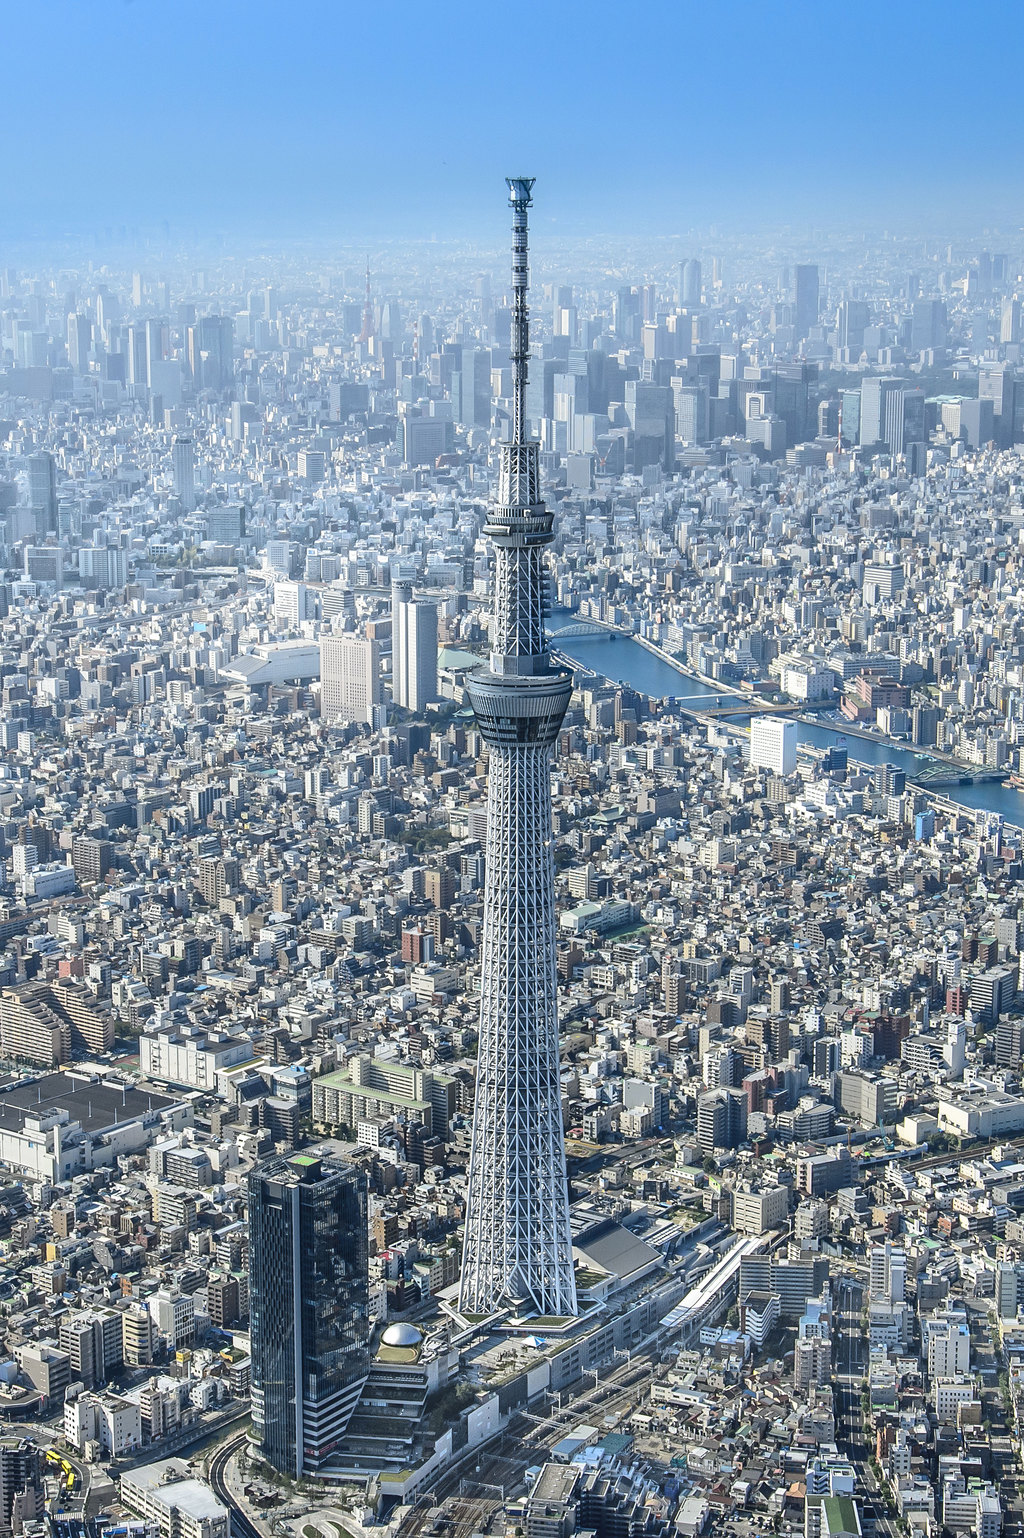 游遍世界亚洲篇之日本东京晴空塔,一个吃喝玩乐样样俱全的地方